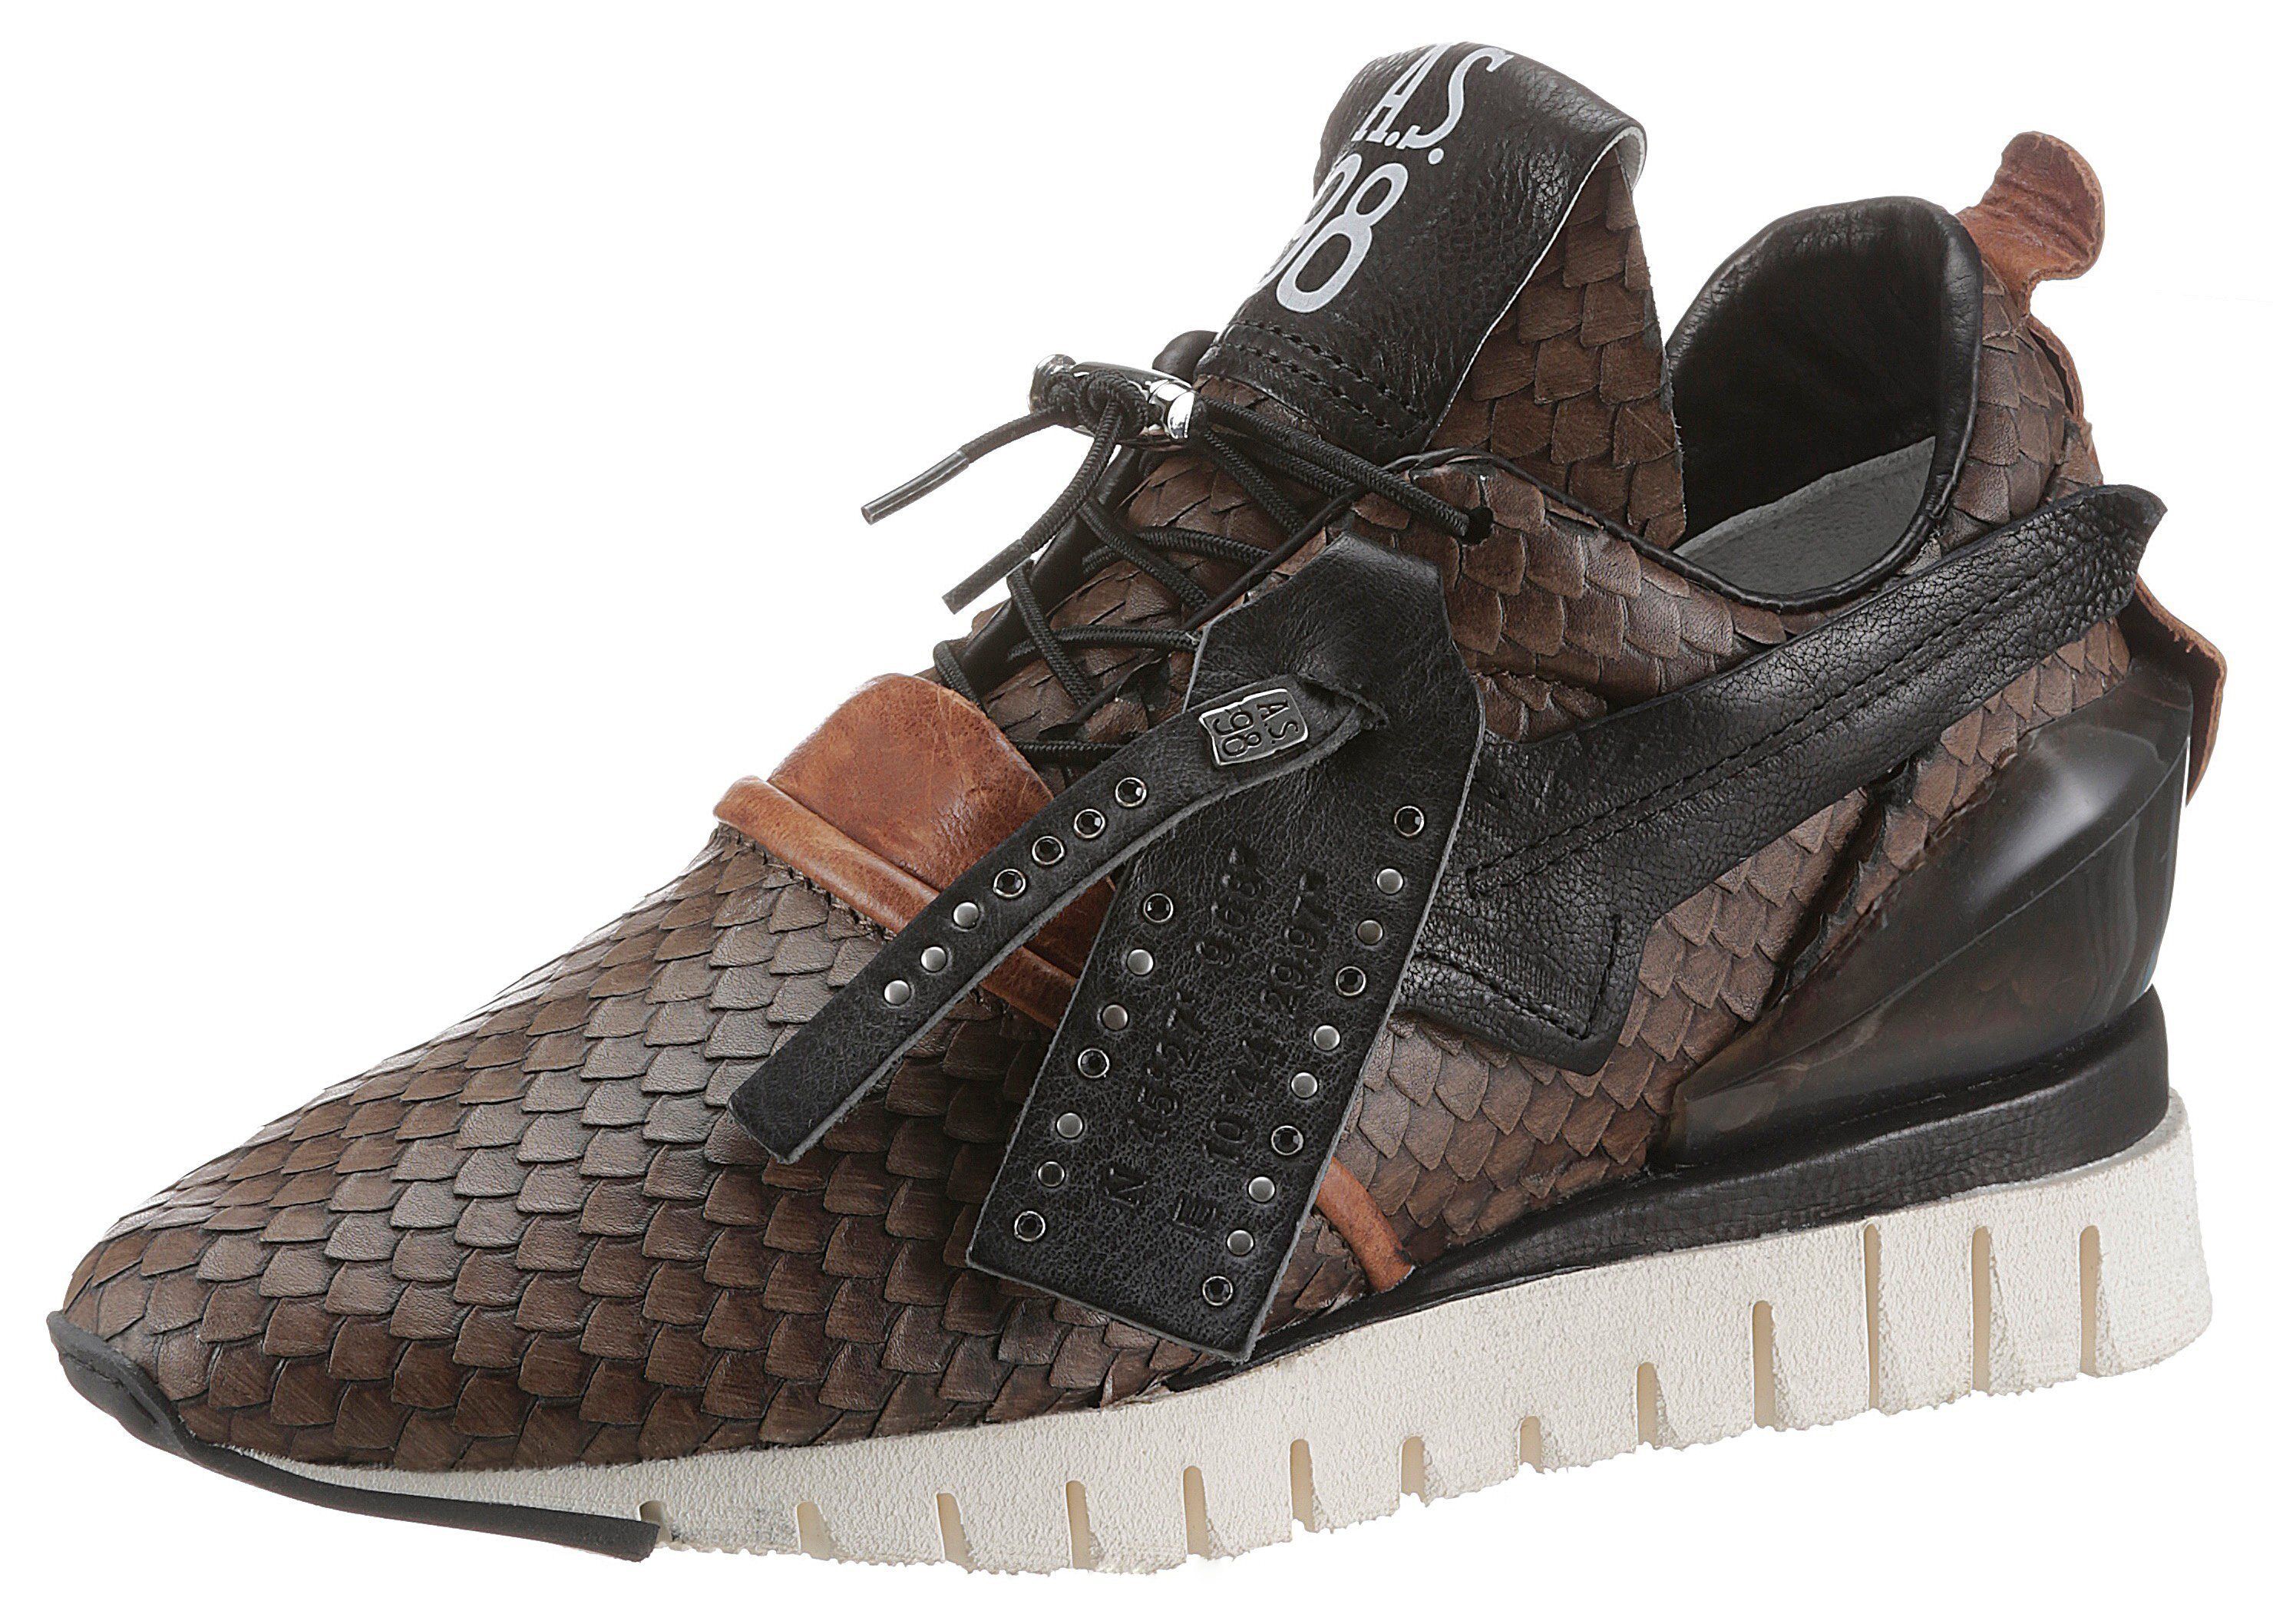 A.S.98 »DENASTAR« Keilsneaker mit angesagter Reptilienprägung, braun-schwarz